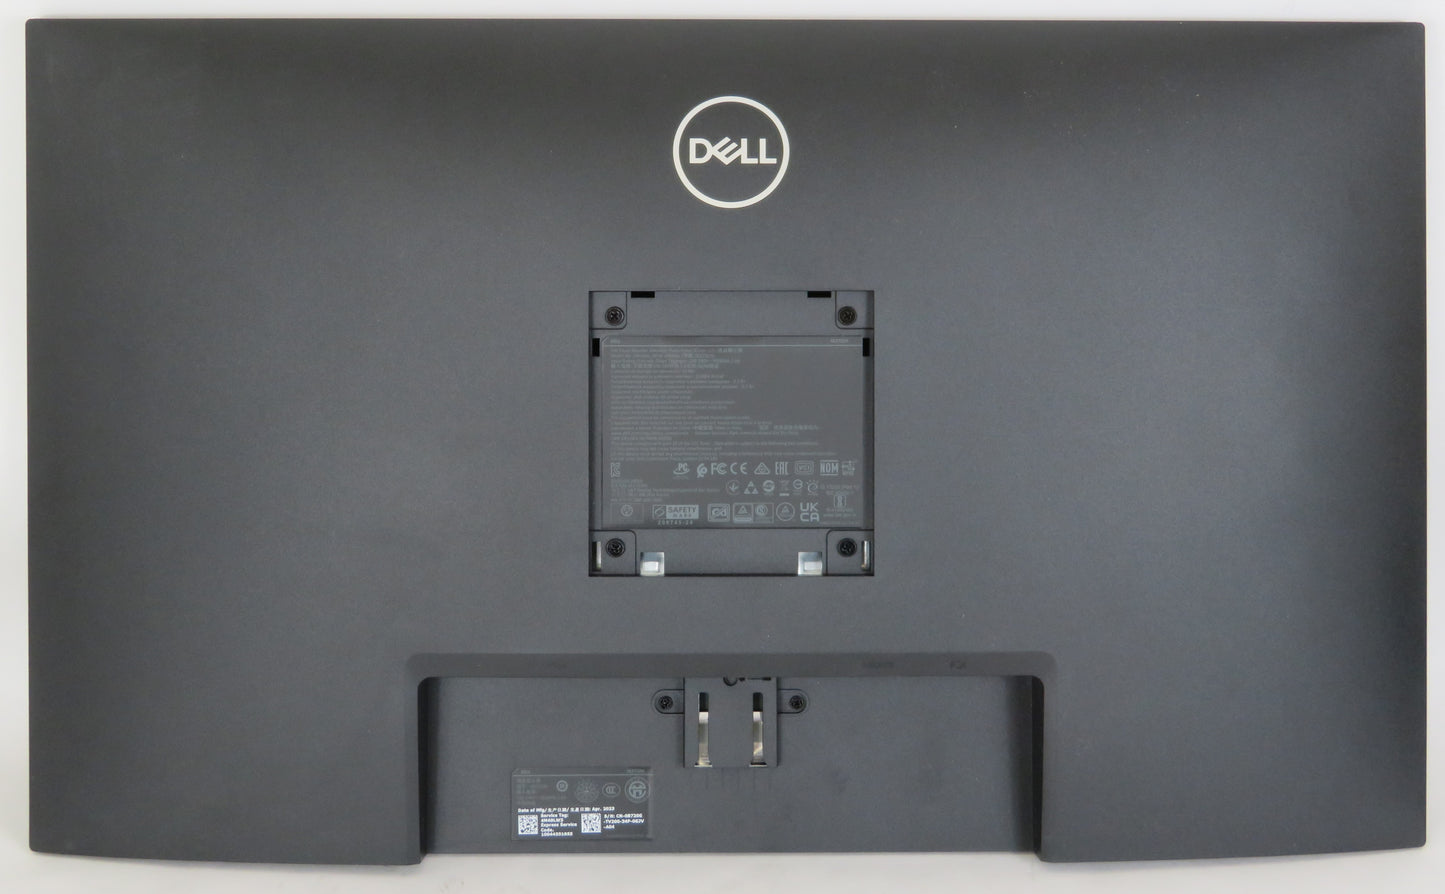 Dell SE2722H 27" Monitor Full HD VGA, HDMI, AMD FreeSync